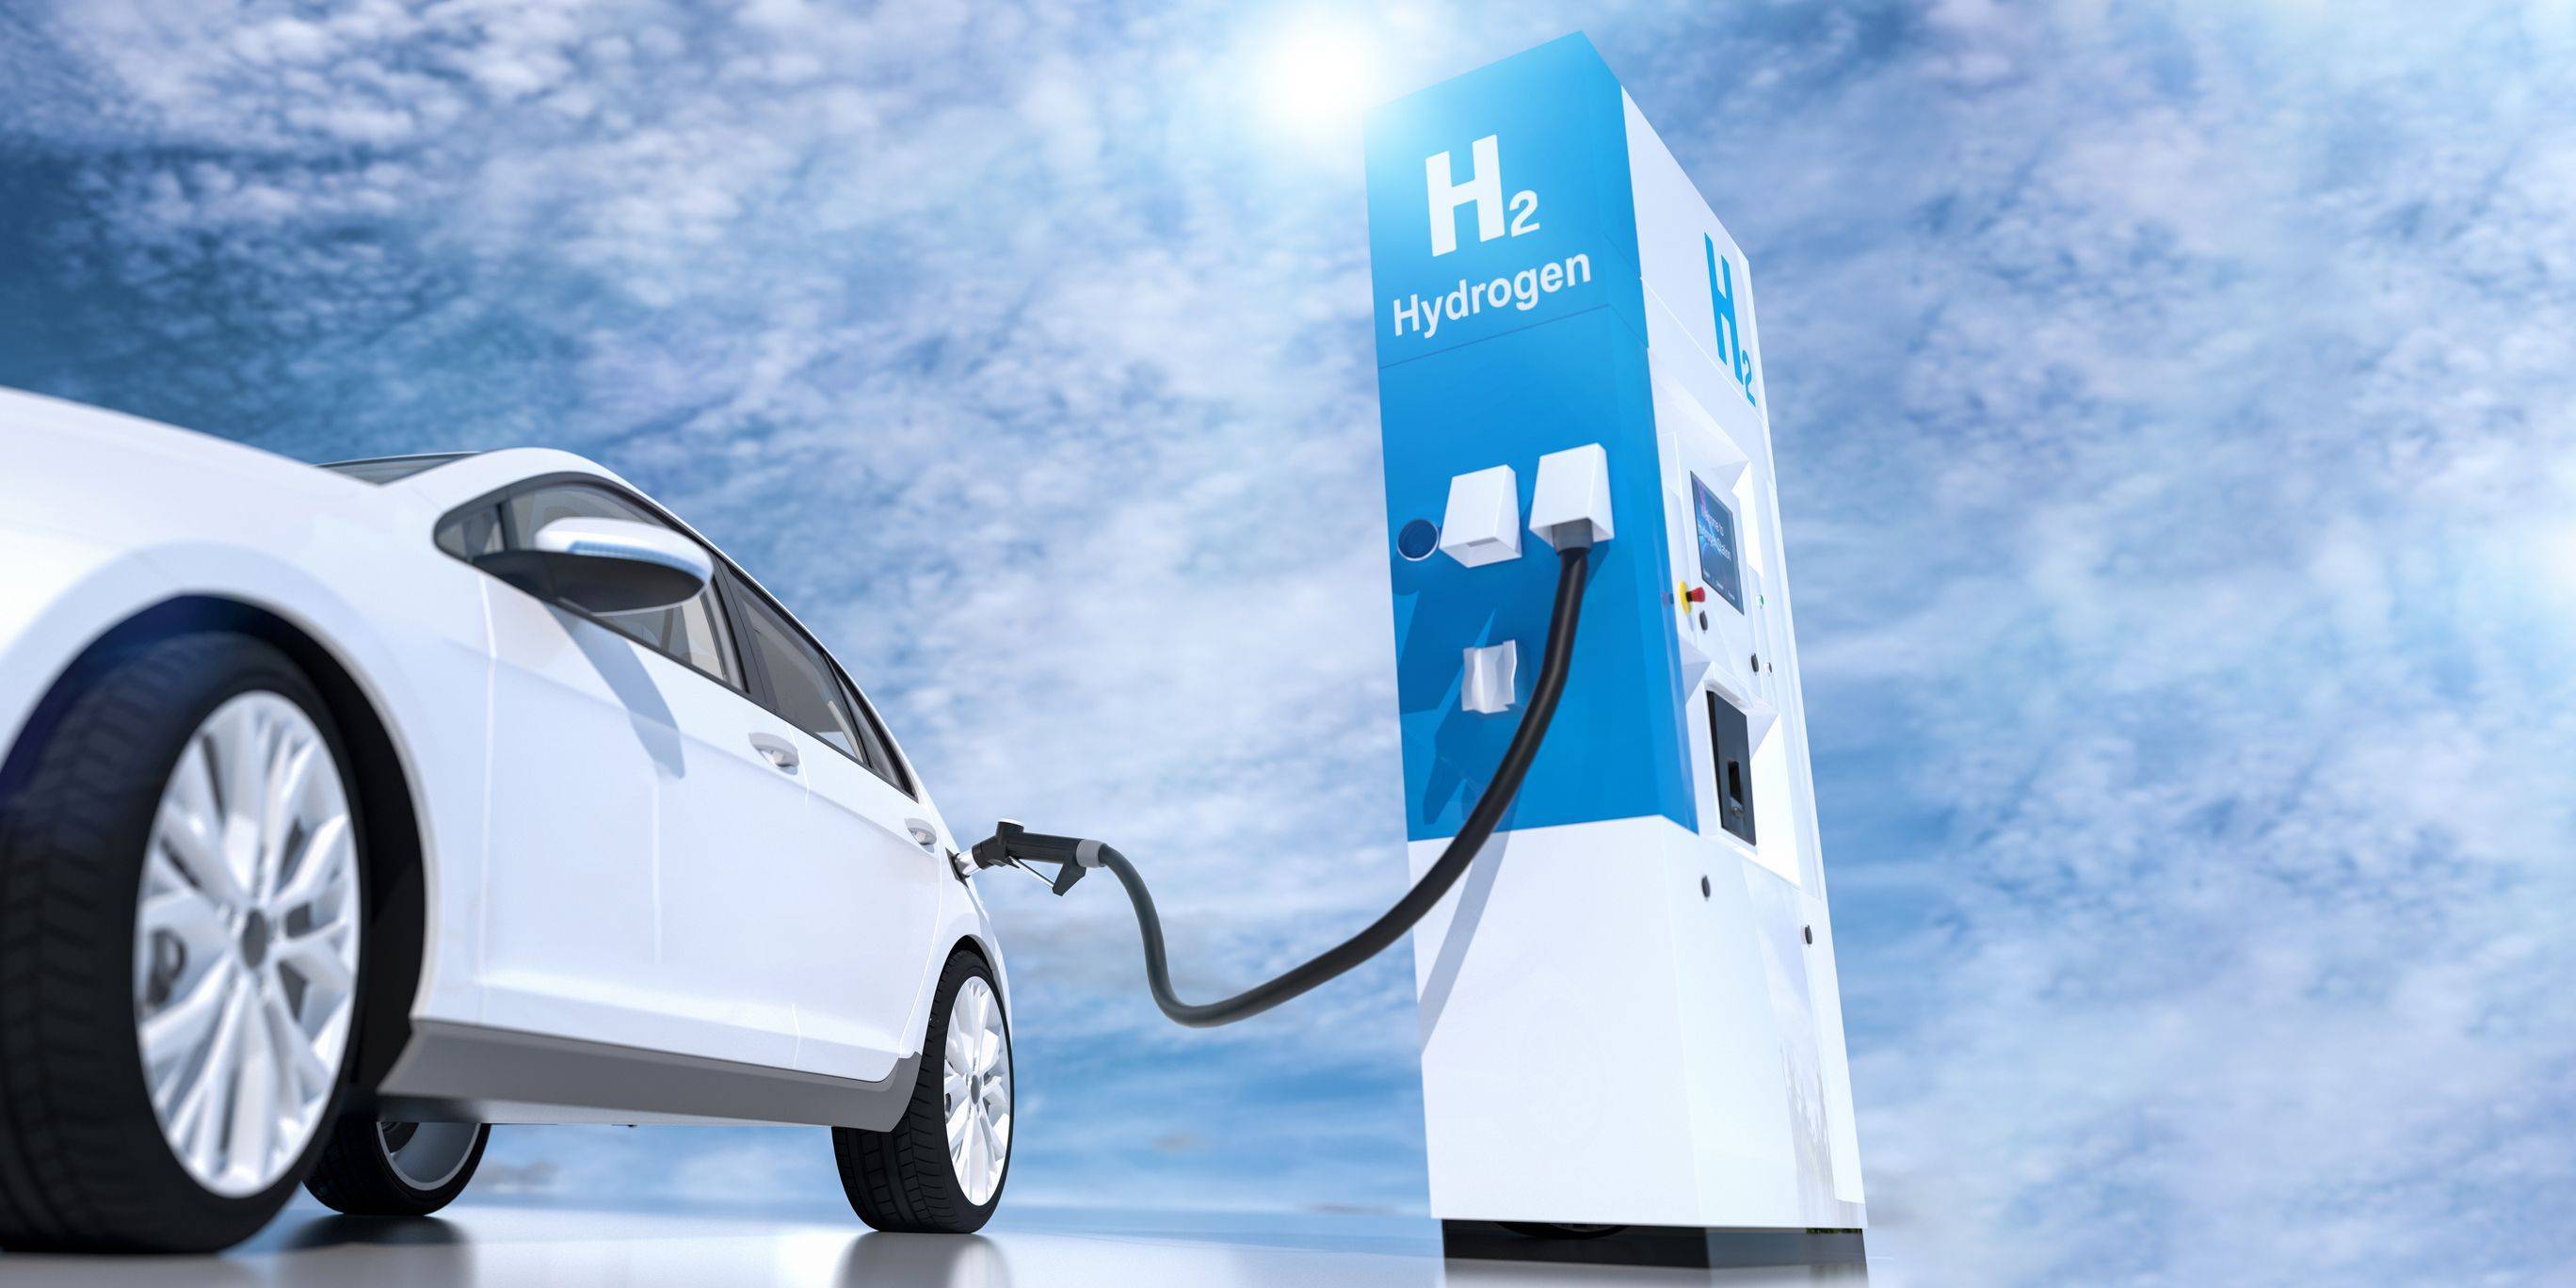 海马汽车首批25台氢燃料电池汽车投入运营